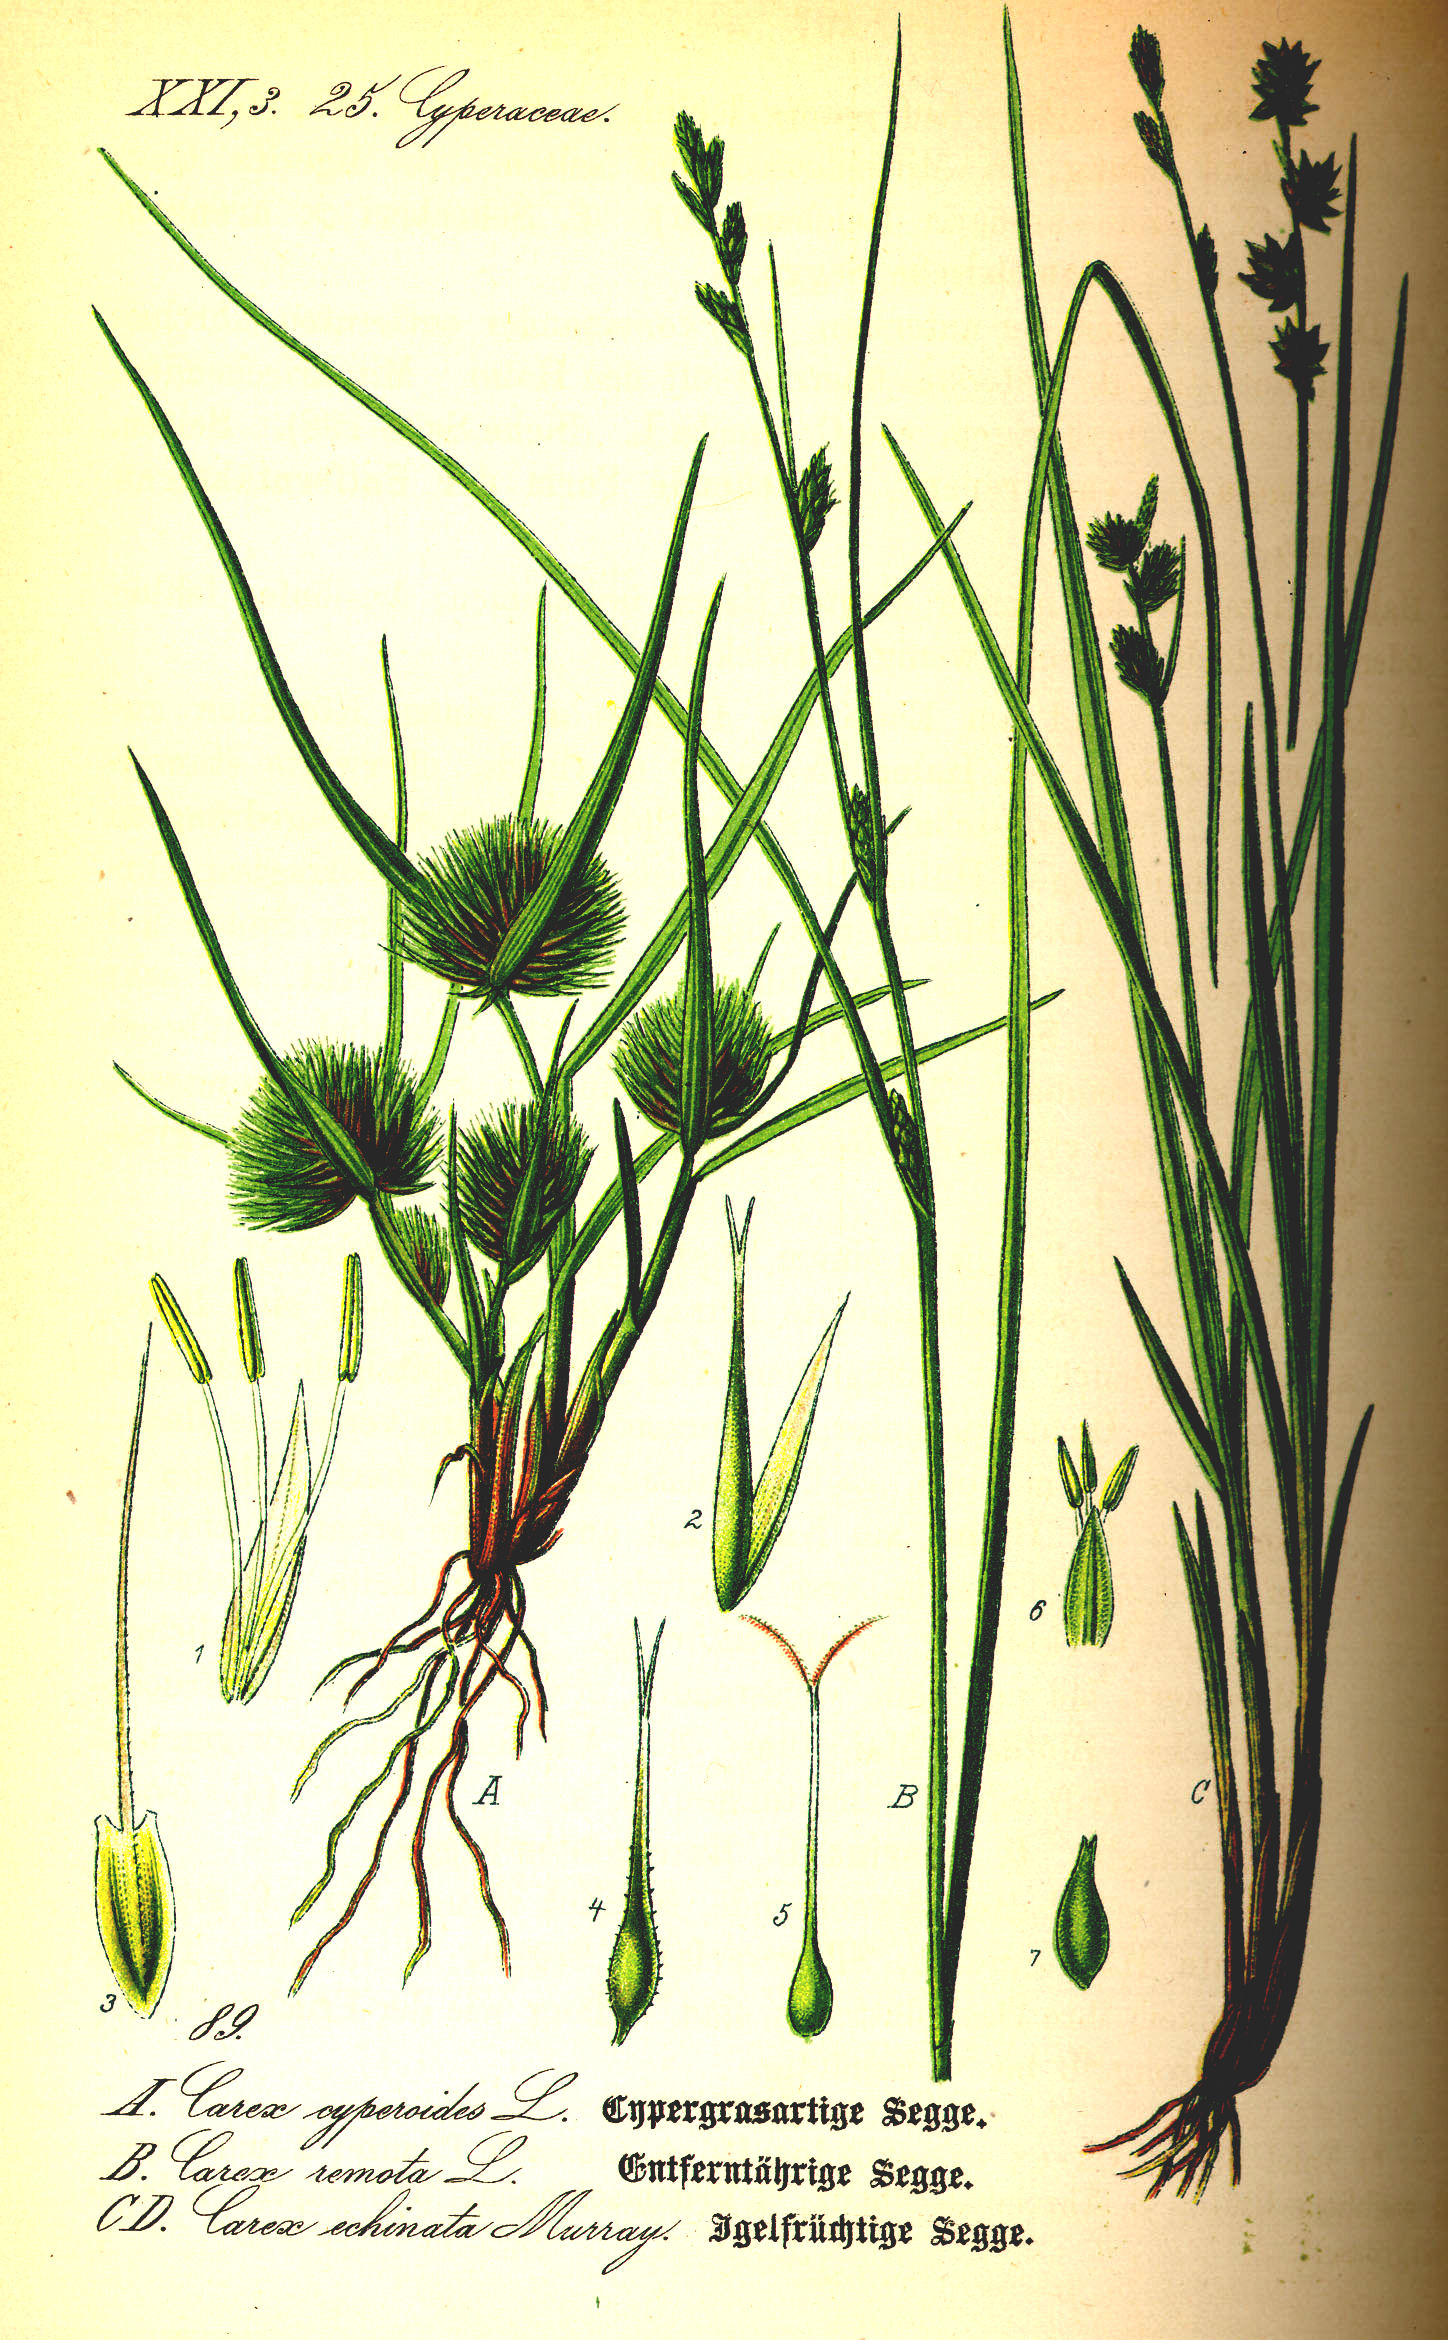 Här exempel på några av de starrväxter som i vardagligt tal kallades för lappgräs eller lapphö.